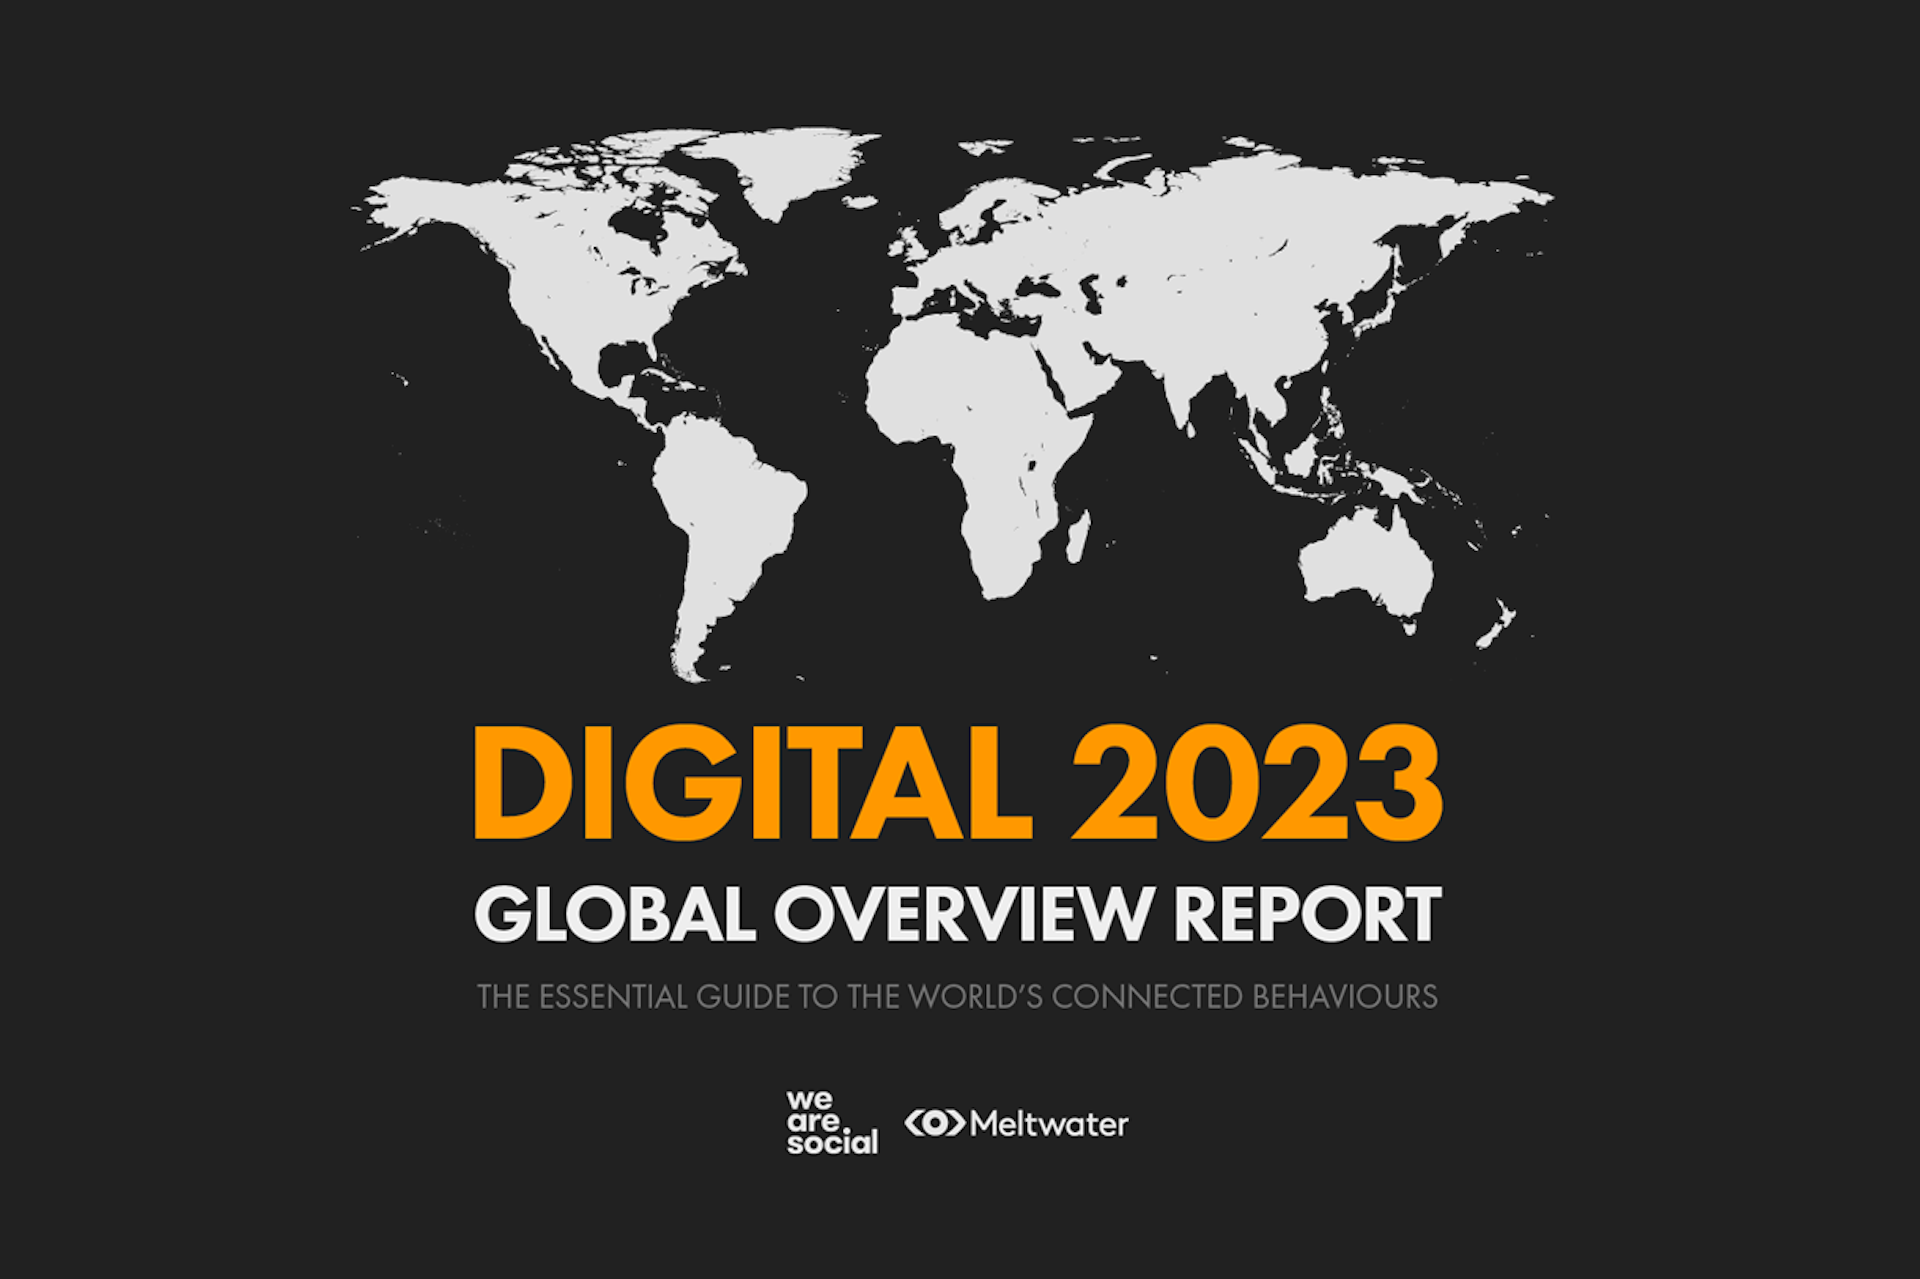 Kepiosin laatiman Digital 2023 Global Overview Report -raportin kansikuva, jonka Meltwater ja We Are Social ovat toimittaneet yhteistyössä. Kuvassa on maailmankartta ja raportin otsikko. 